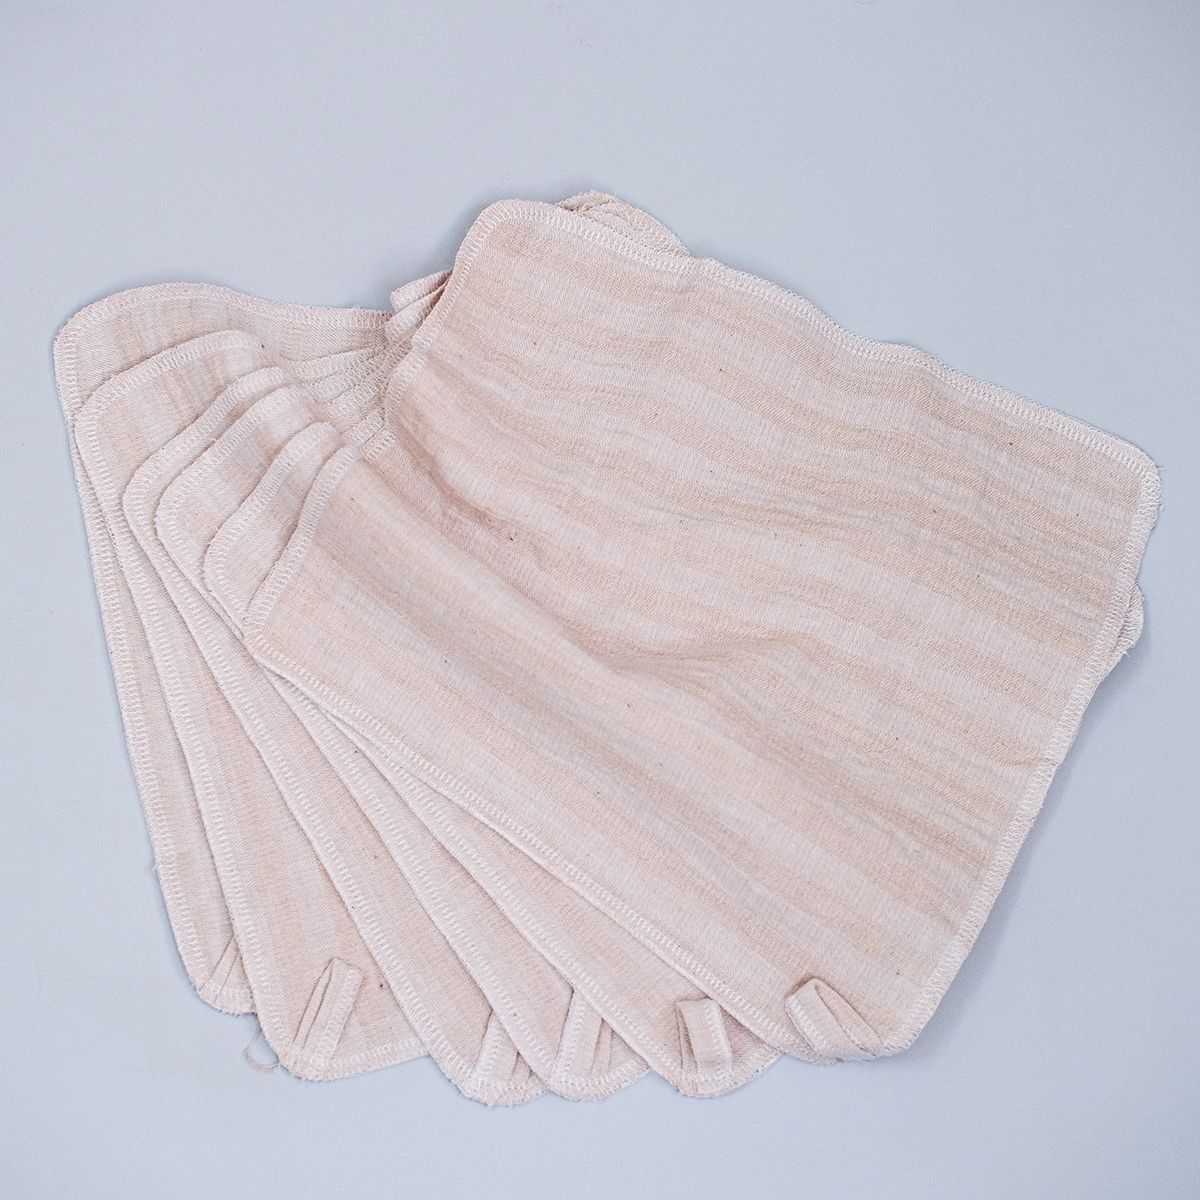  Set 6 khăn xô sữa Muslin 25x25cm | Muslin facecloth | CHOI SEWING 